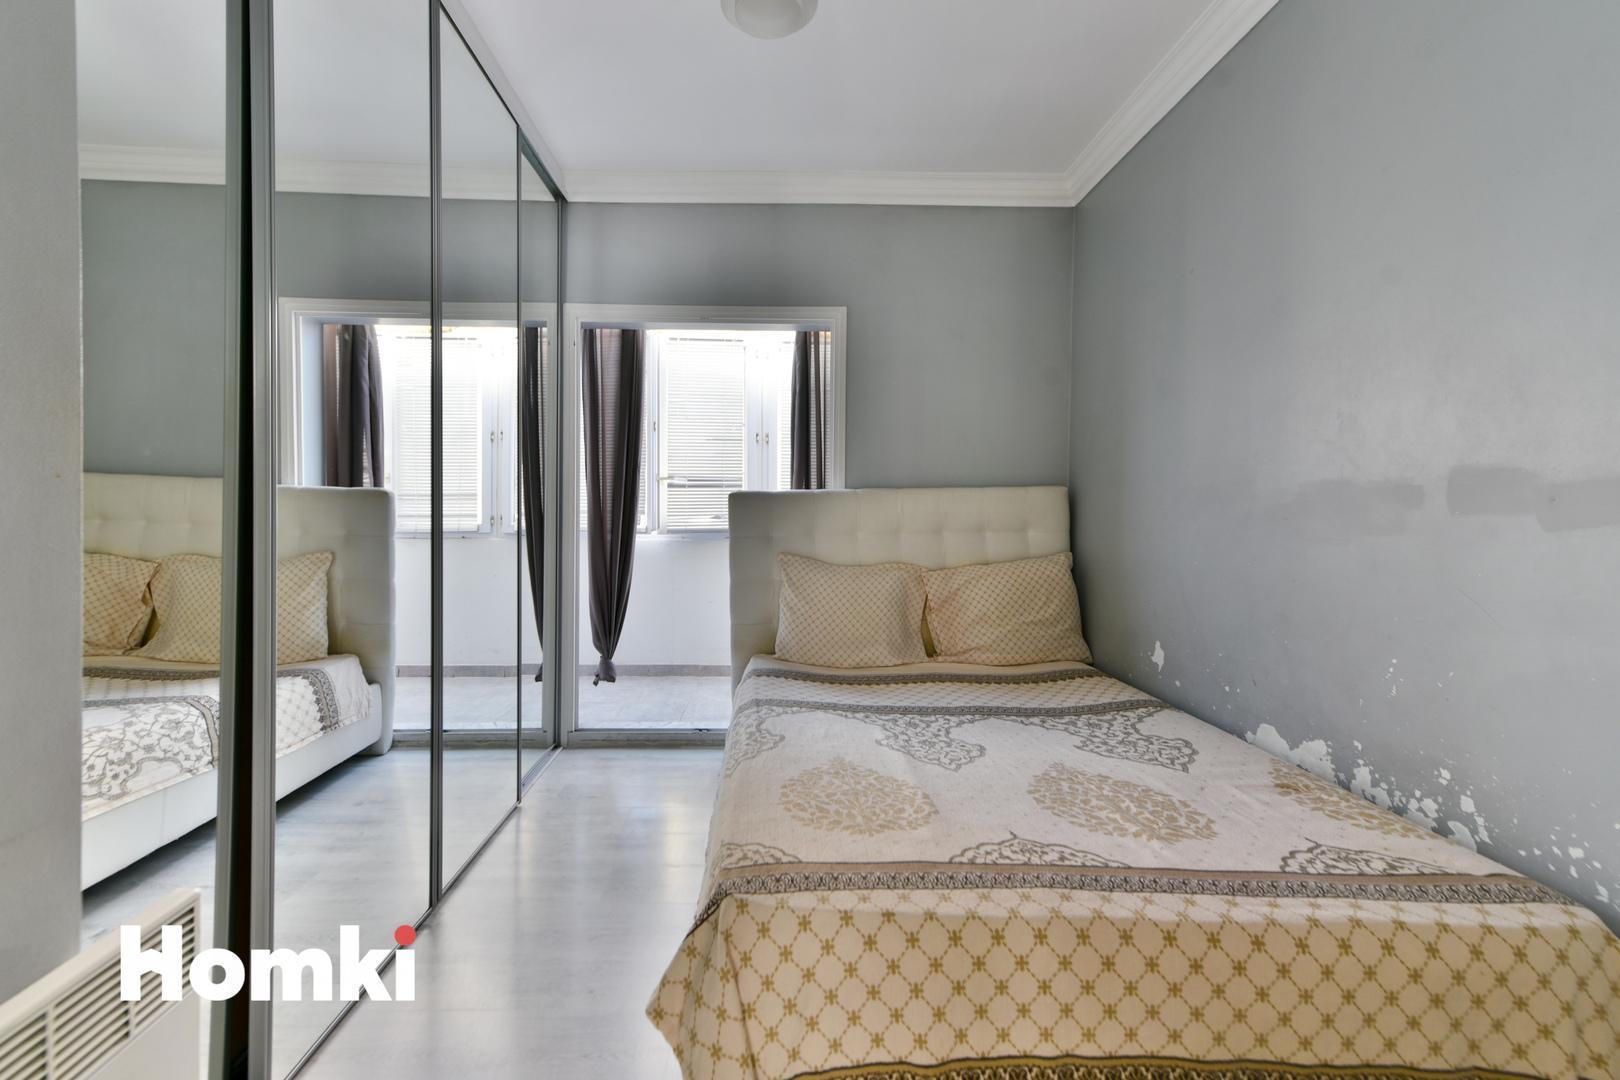 Homki - Vente Appartement  de 59.0 m² à Le Cannet 06110